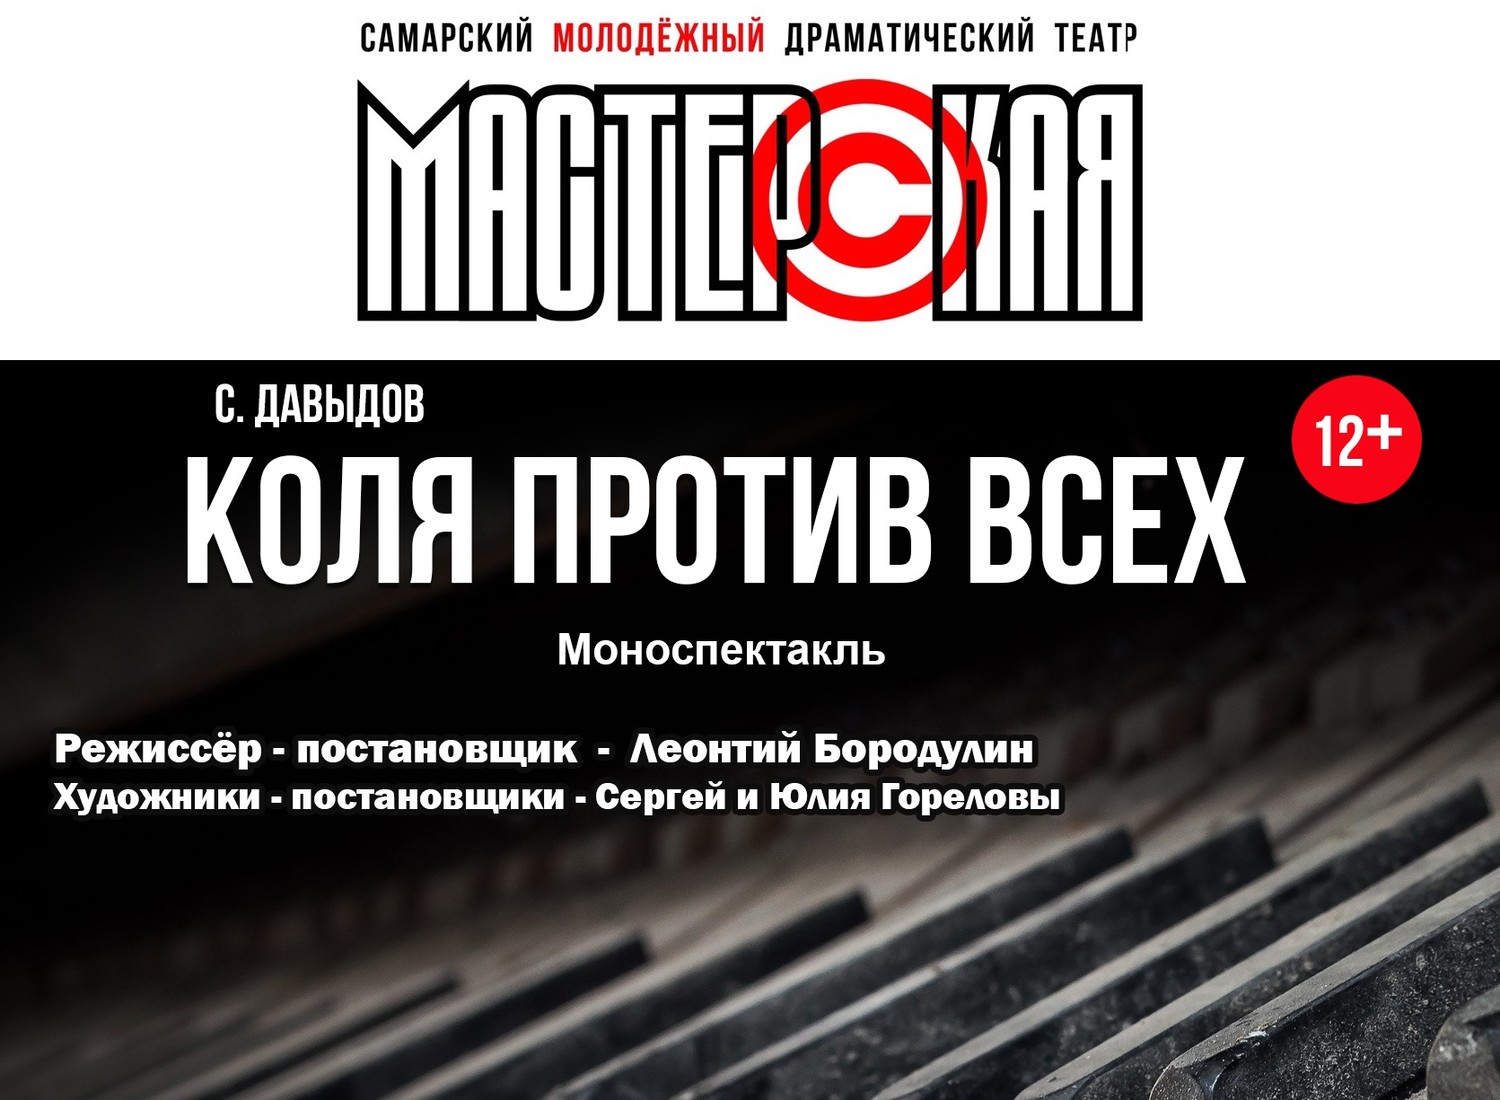 «Коля против всех» С. Давыдов 12+ ПРЕМЬЕРА! Самарский молодежный драматический театр «МАСТЕРСКАЯ»